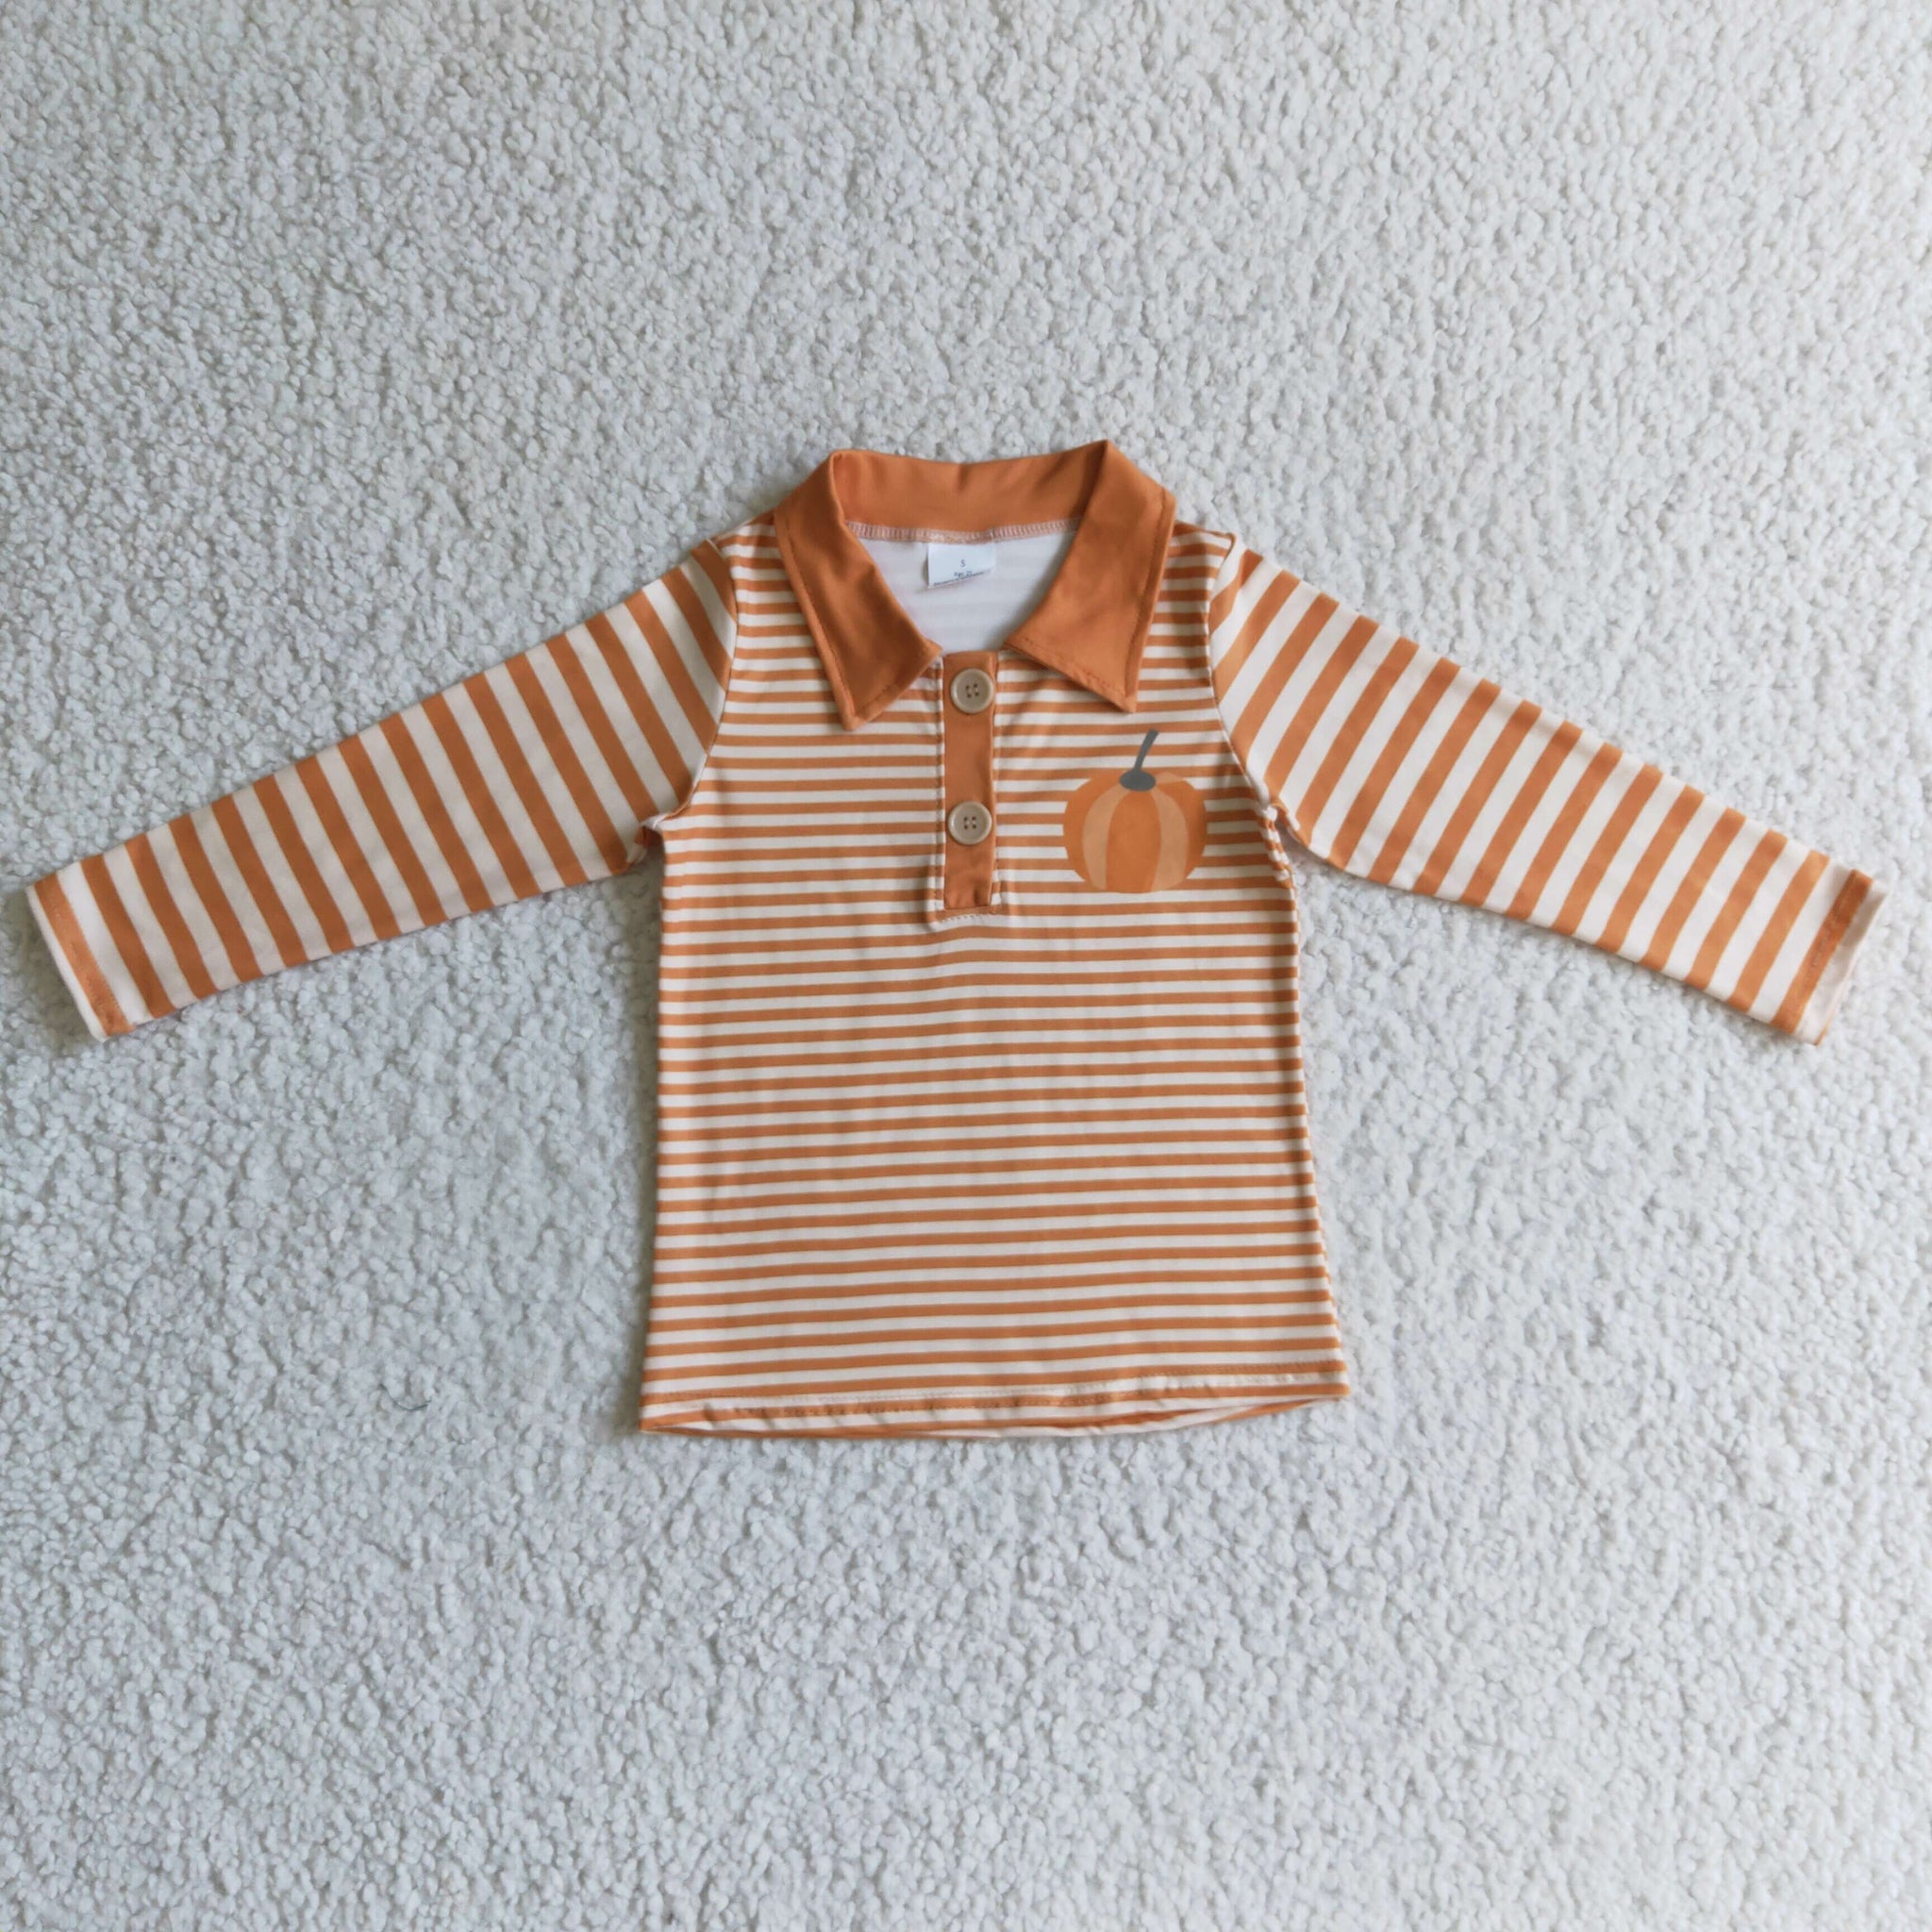 BT0039 orange pumpkin baby boy clothes halloween shirt